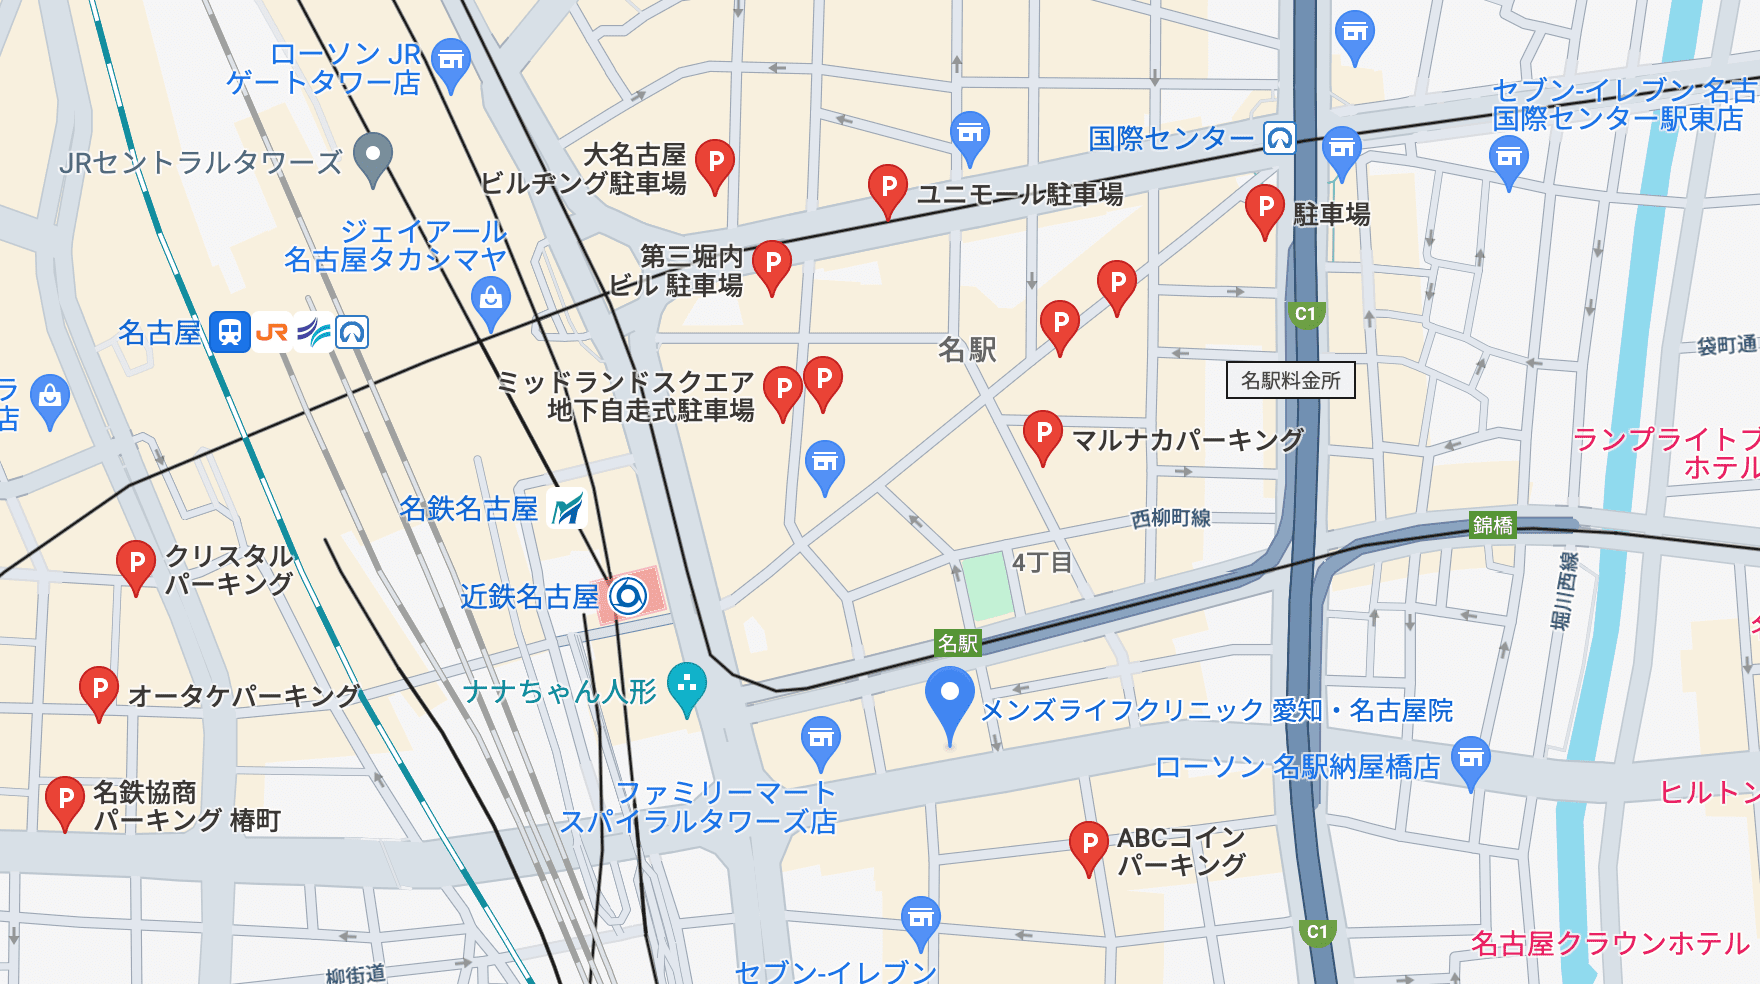 メンズライフクリニック愛知・名古屋院周辺の駐車場情報です。